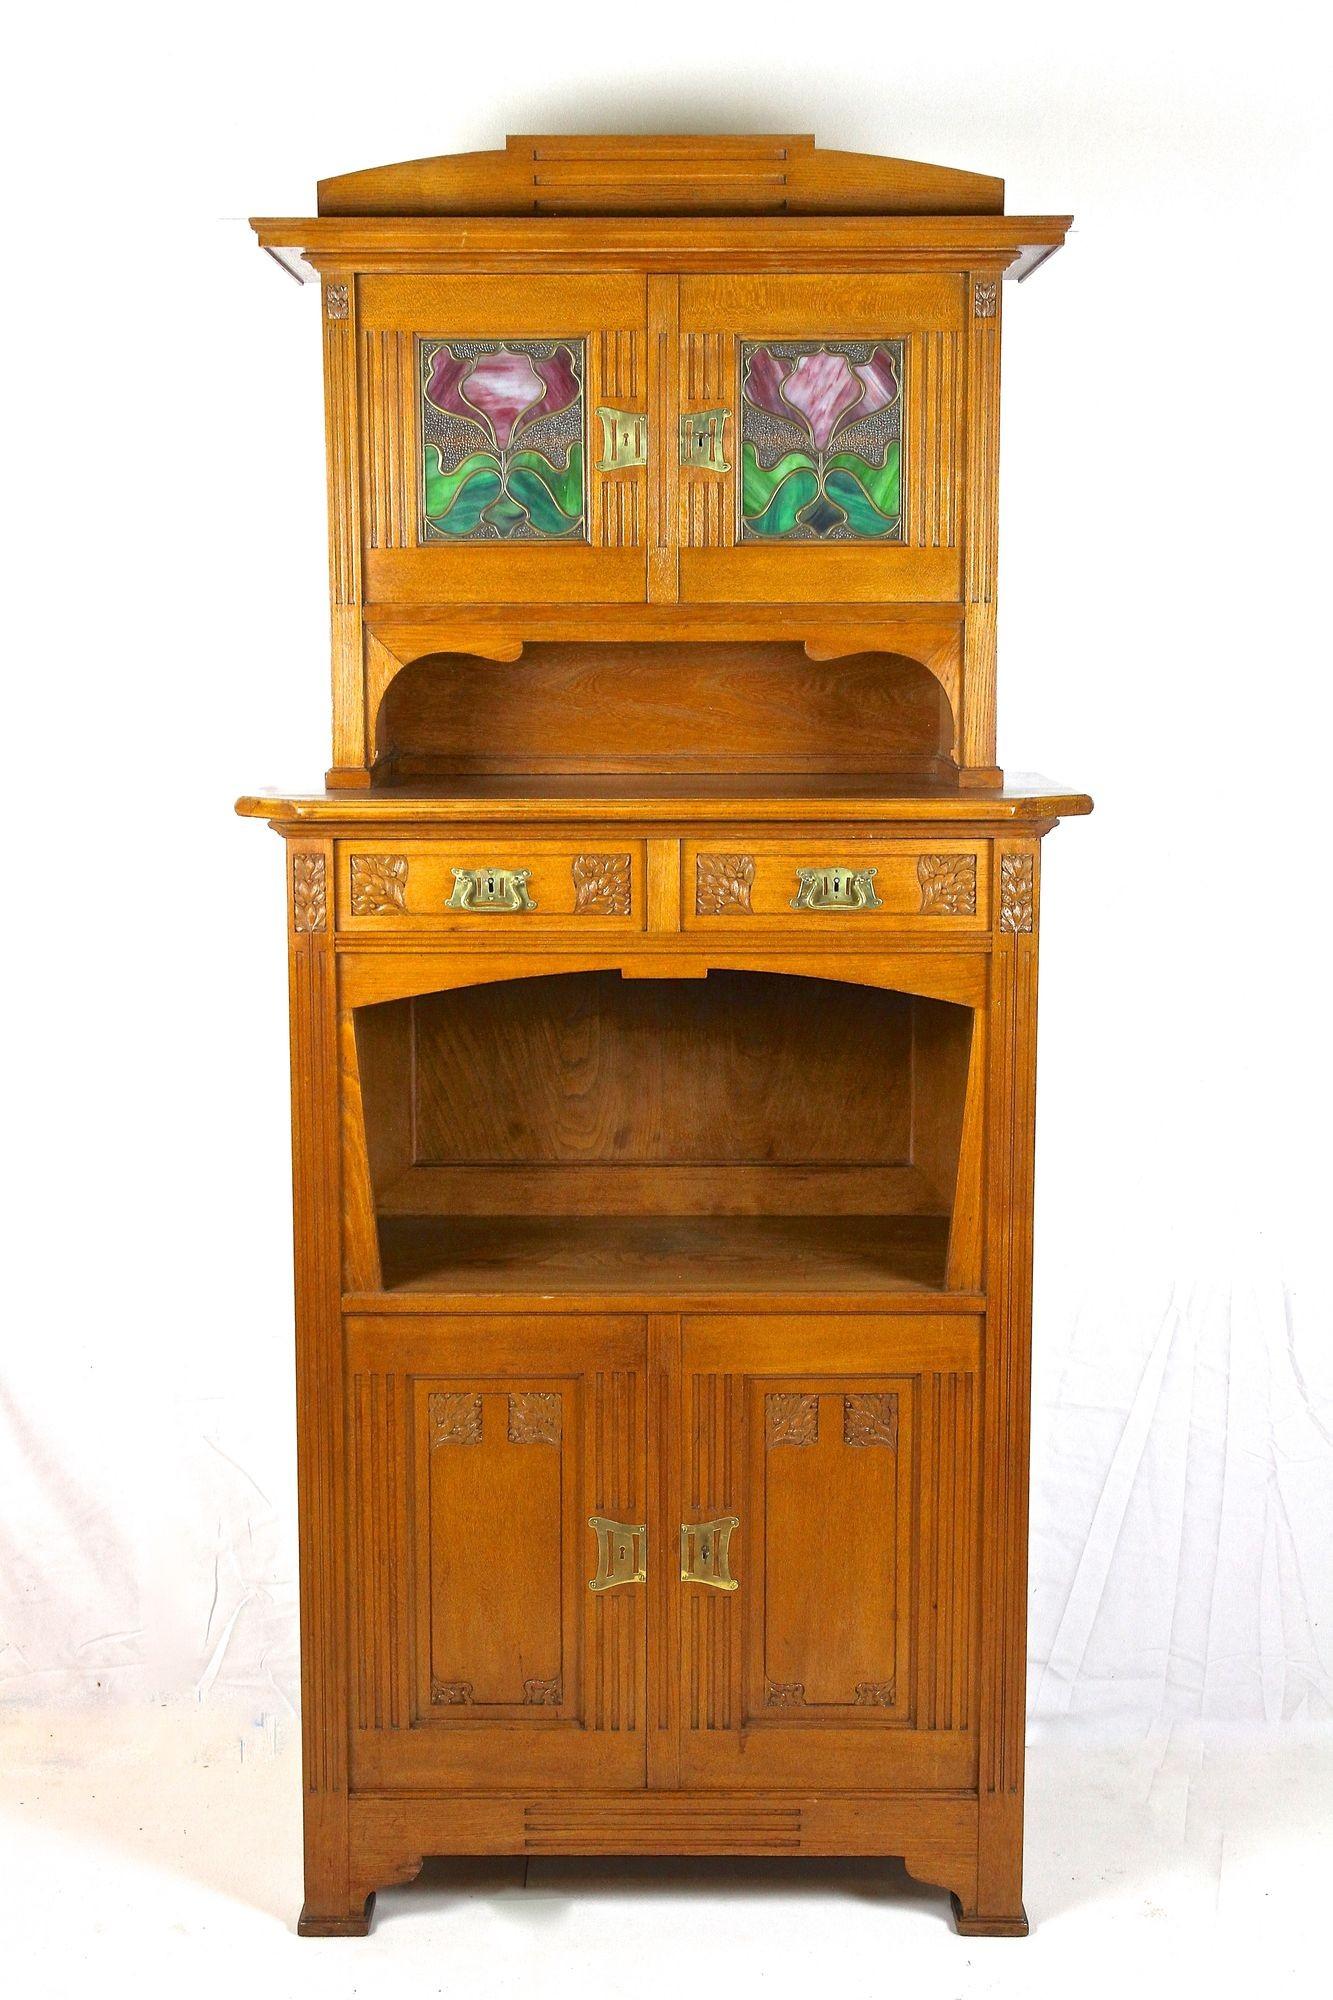 Absolument charmant meuble ou buffet Art Nouveau en bois de chêne provenant d'Autriche vers 1910. Composée de deux parties, la partie inférieure (qui rappelle un peu un demi-armoire) offre deux tiroirs, un grand compartiment ouvert et deux portes.